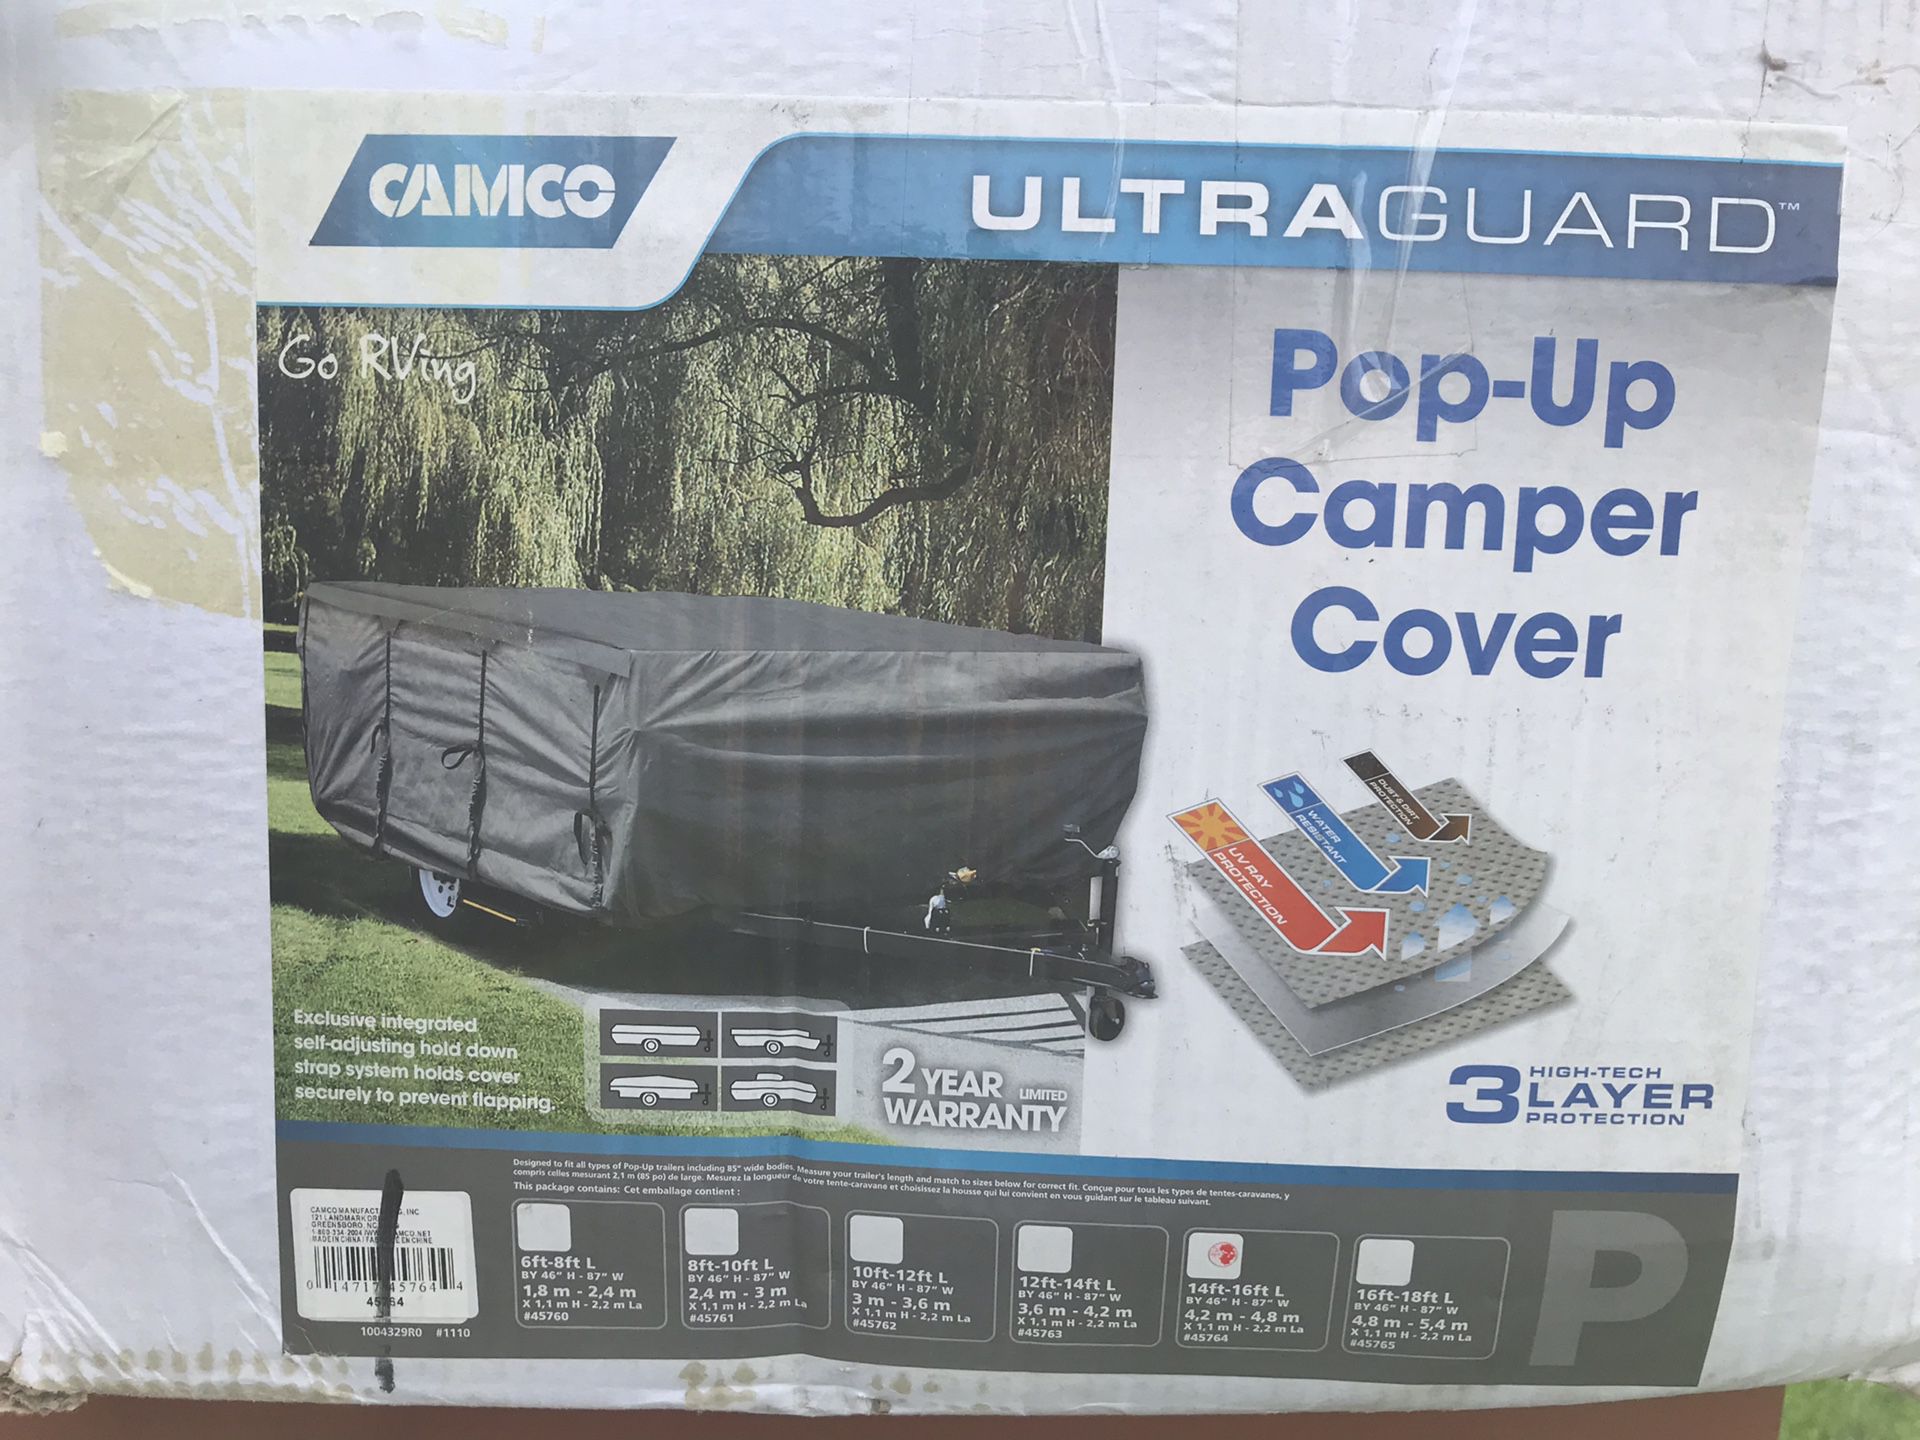 Camco ultraguard pop up camper cover